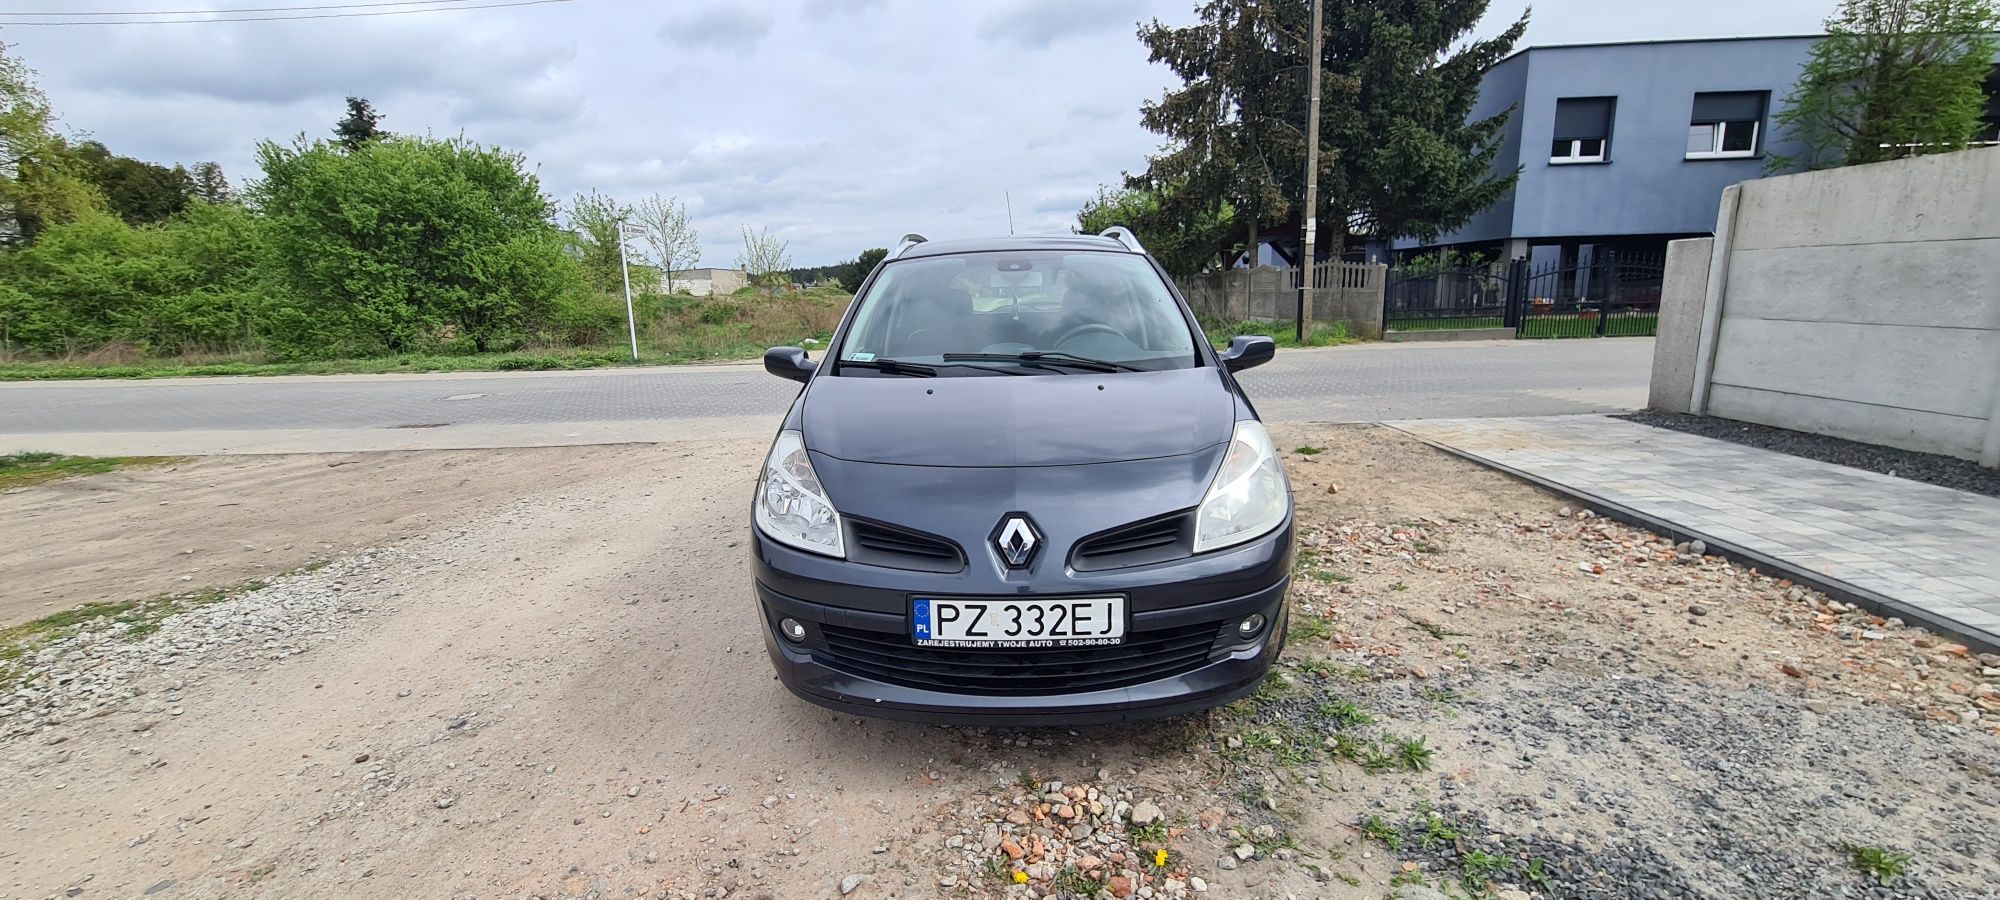 Renault Clio 1.5 dci Klimatyzacja